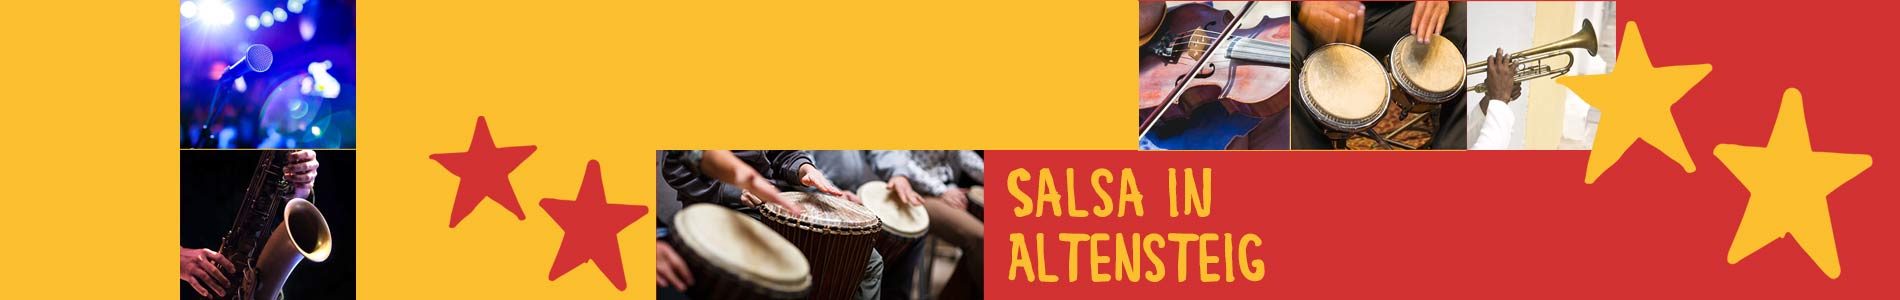 Salsa in Altensteig – Salsa lernen und tanzen, Tanzkurse, Partys, Veranstaltungen